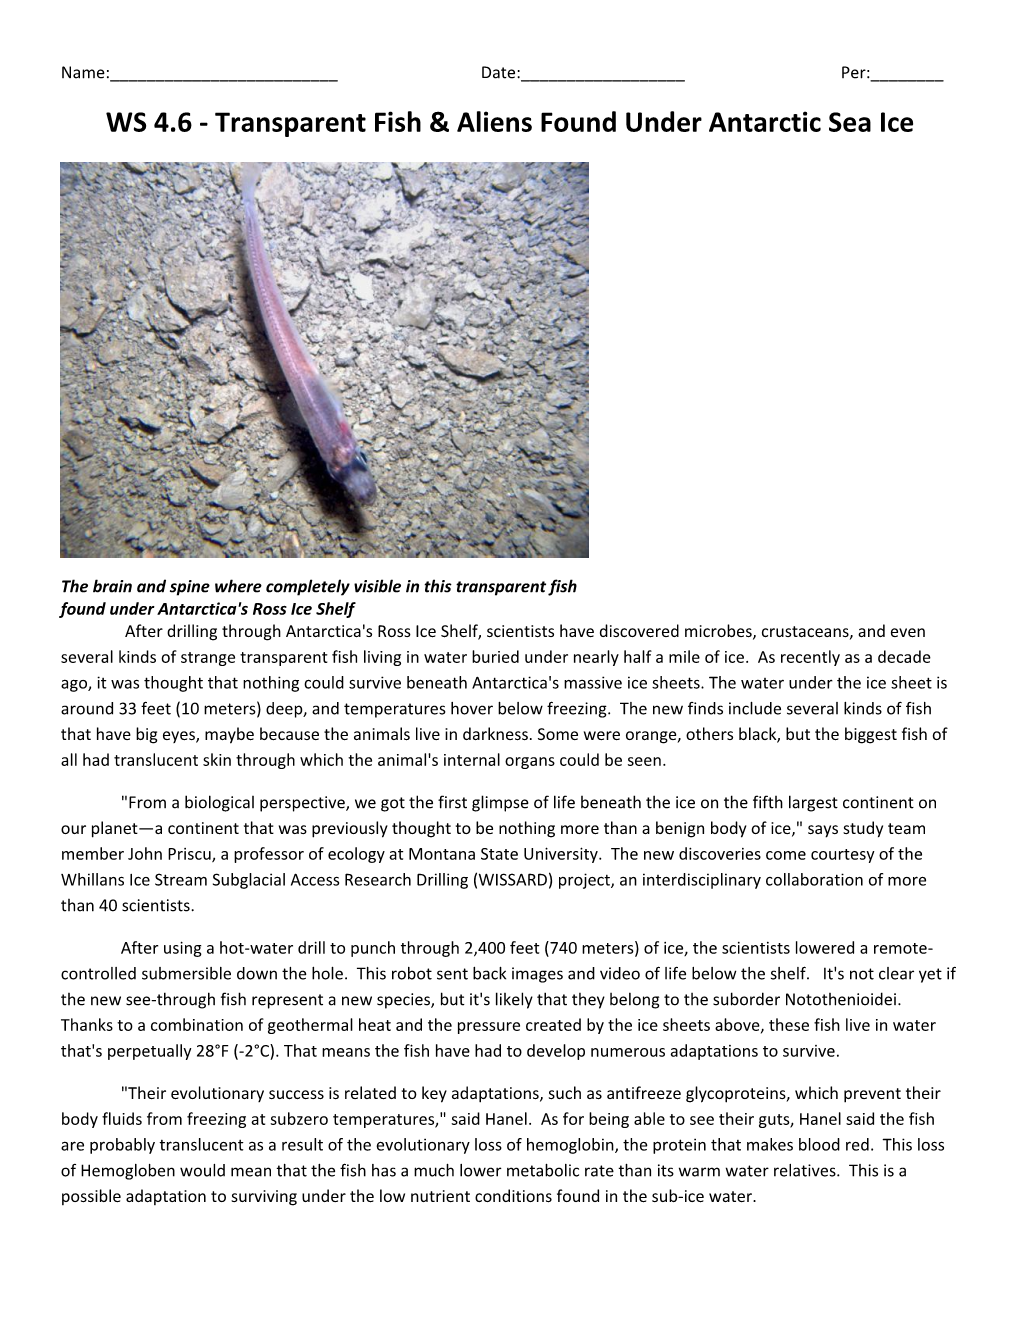 WS 4.6 - Transparent Fish & Aliens Found Under Antarctic Sea Ice